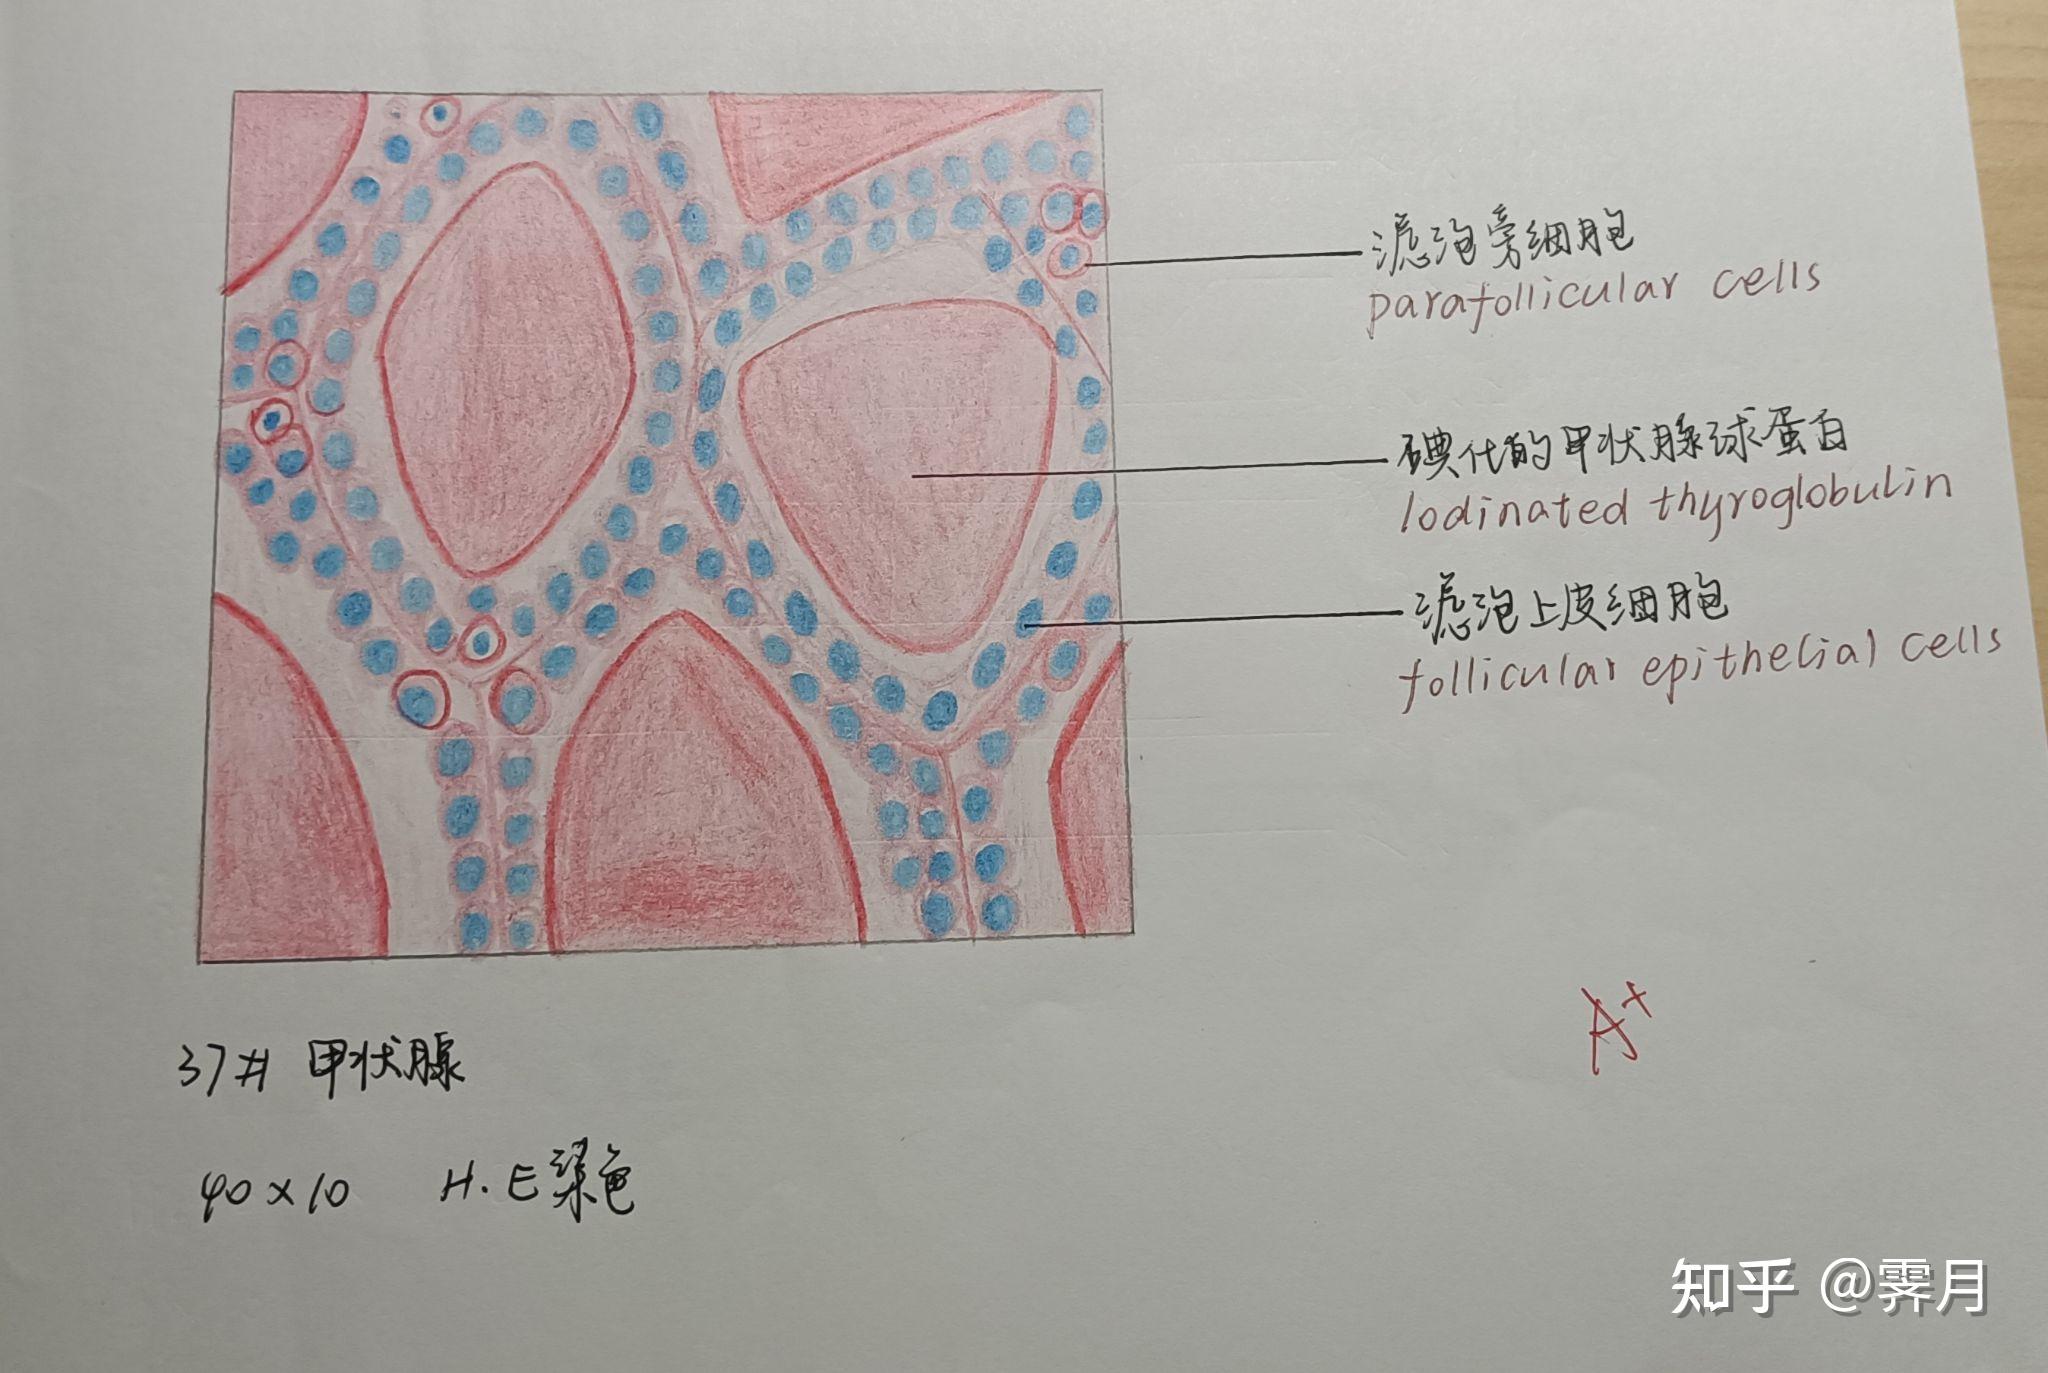 3淋巴结(人)2骨骼肌(纵切)1单层柱状上皮细胞(小肠)